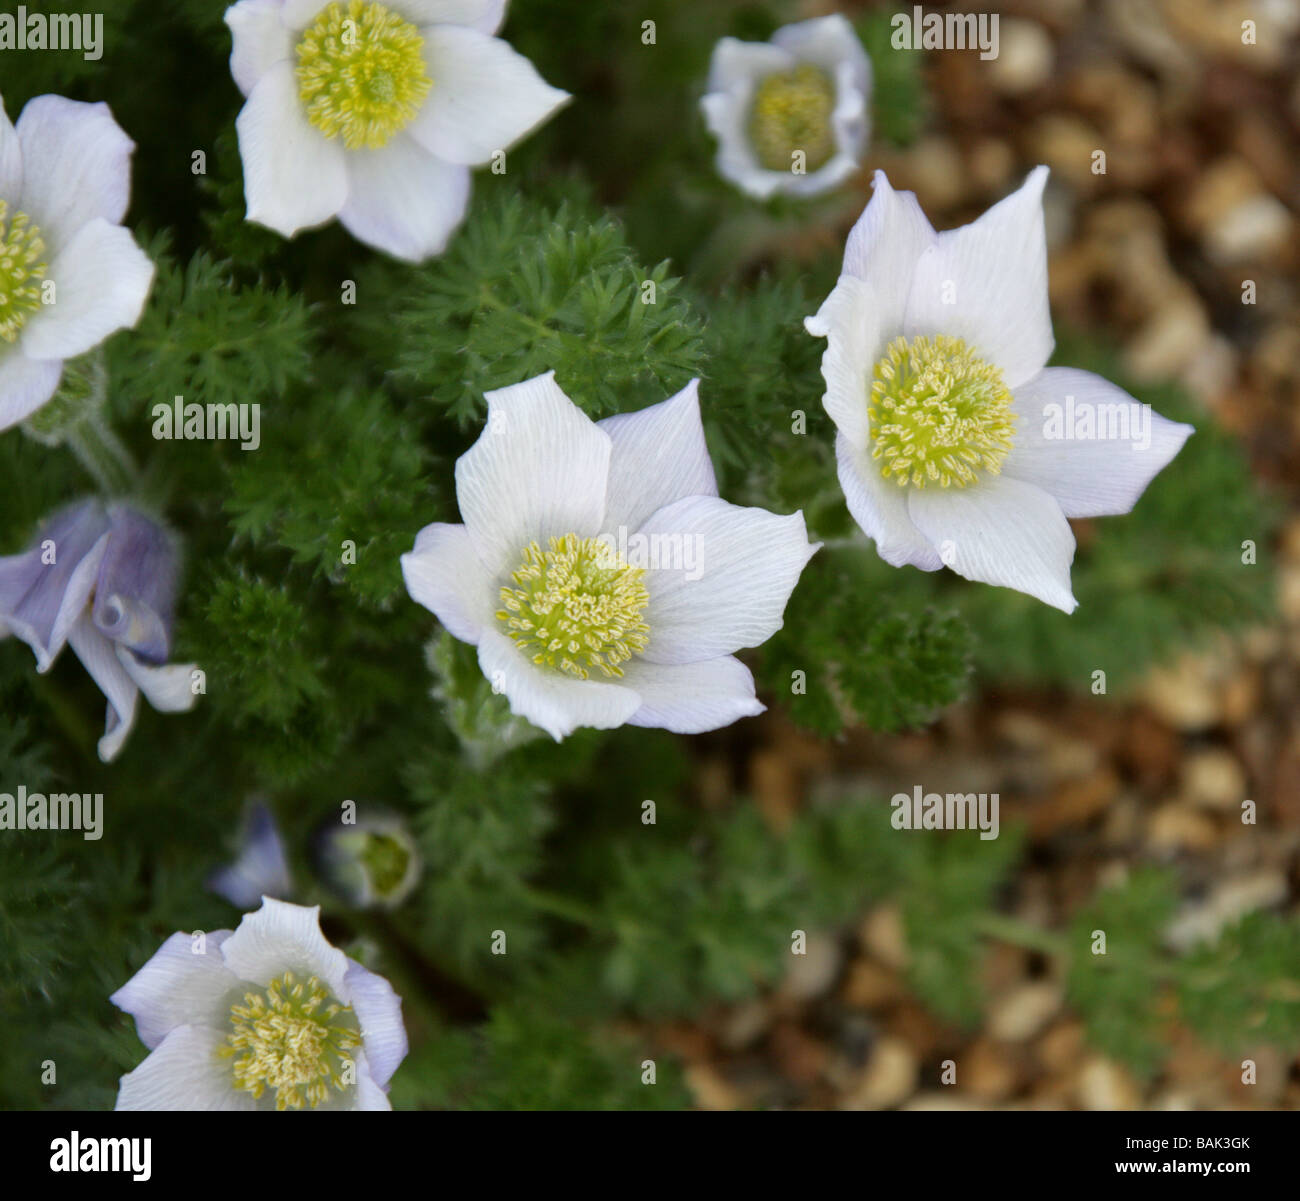 Albanian Pasque-flower 'Lutea', a White Pasque Flower, Pulsatilla albana, Ranunculaceae, Caucasus Stock Photo